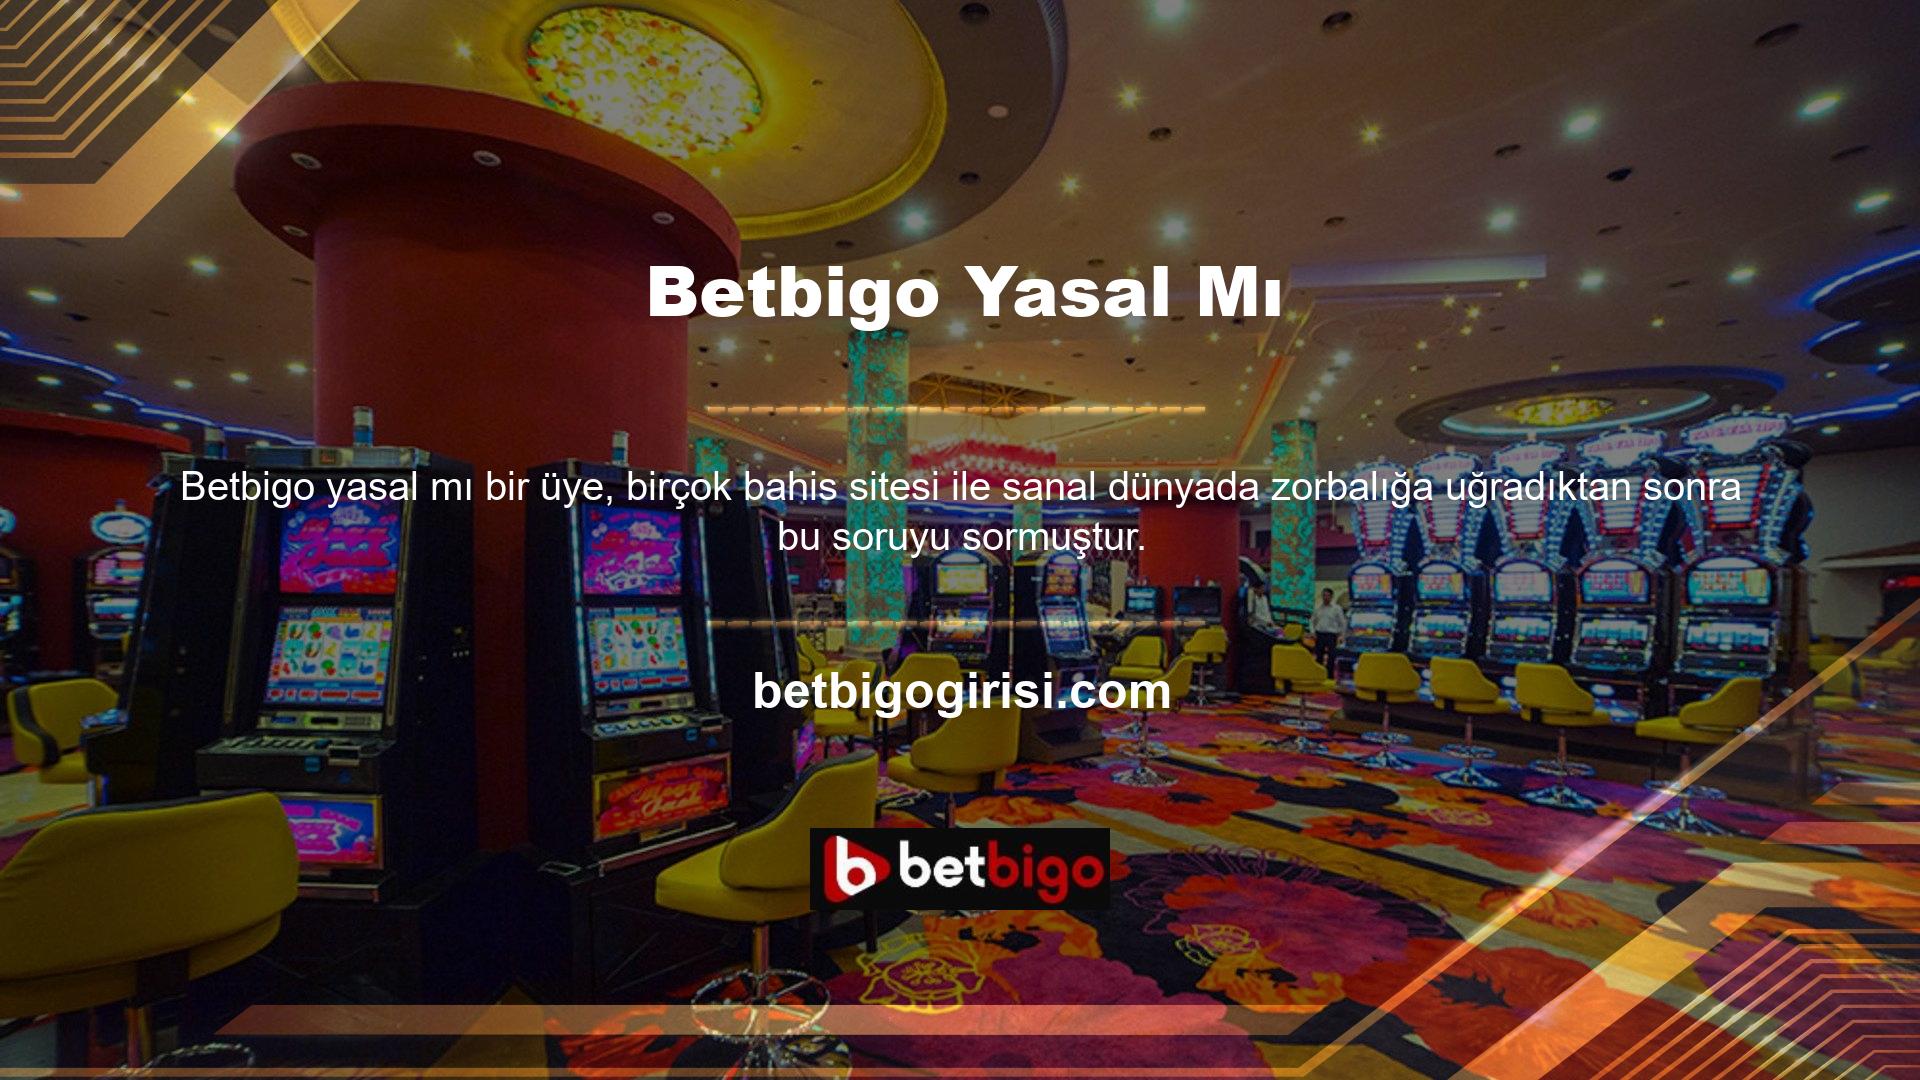 Birçok üye yasa dışı sitelerde casino oynamaktan muzdariptir